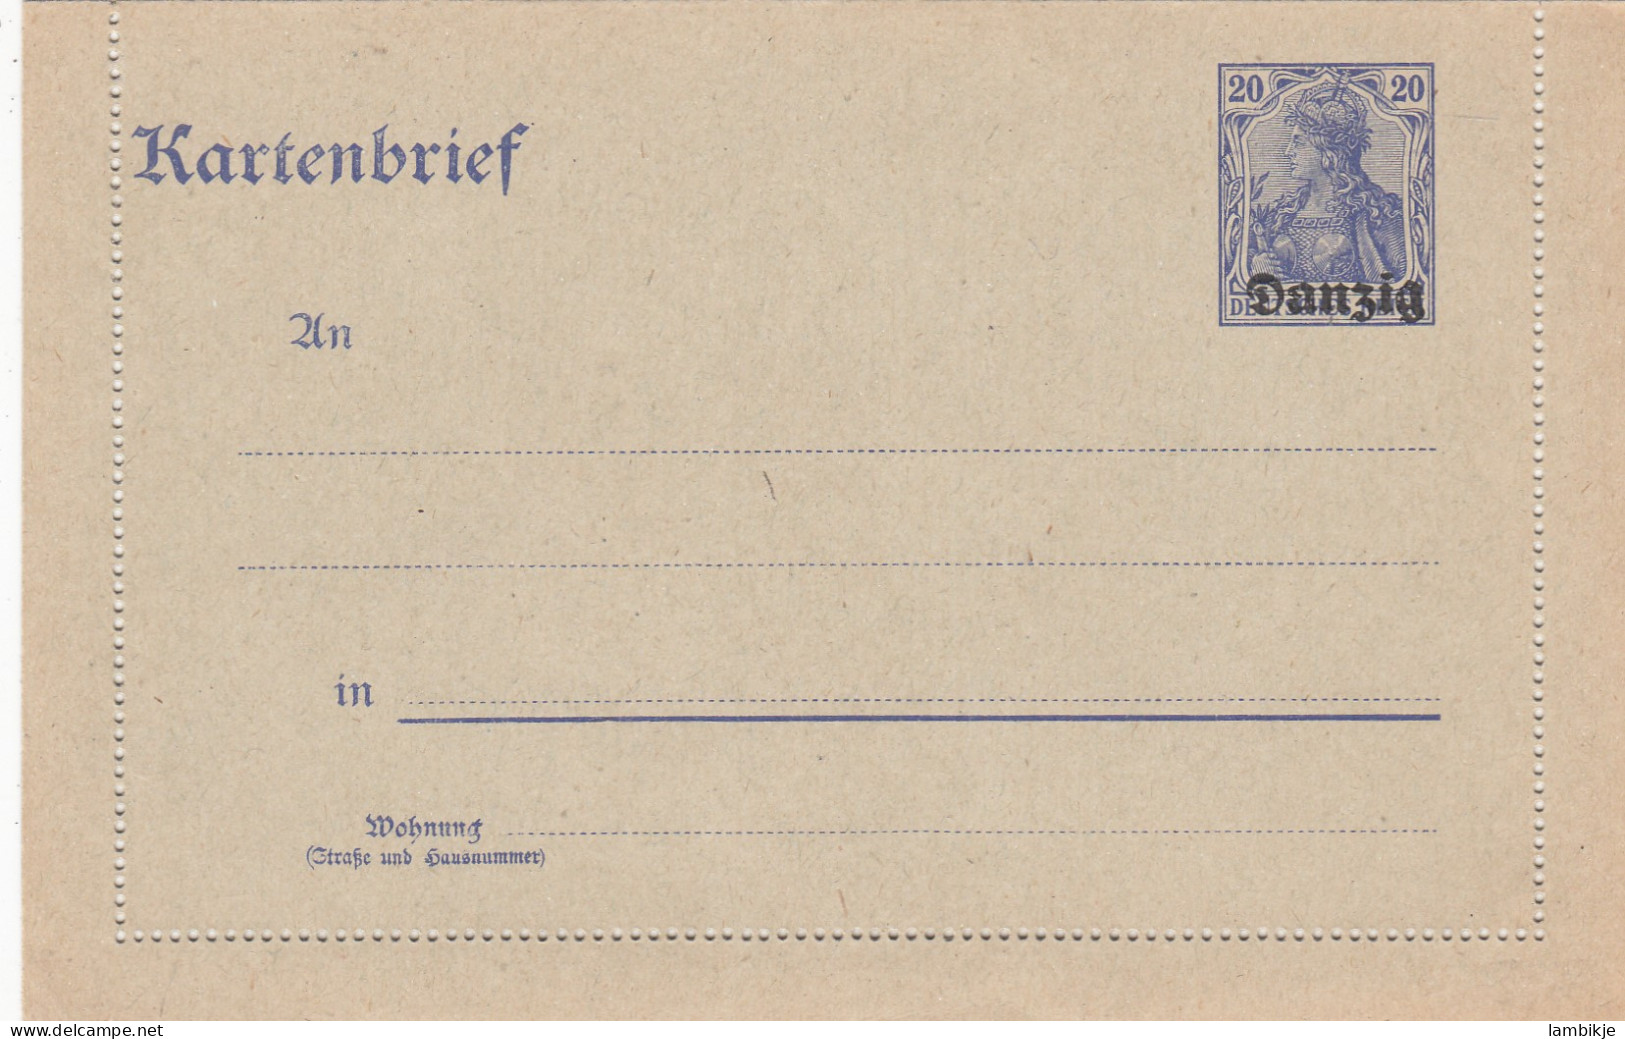 Deutsches Reich Danzig Kartenbrief 1920 - Covers & Documents